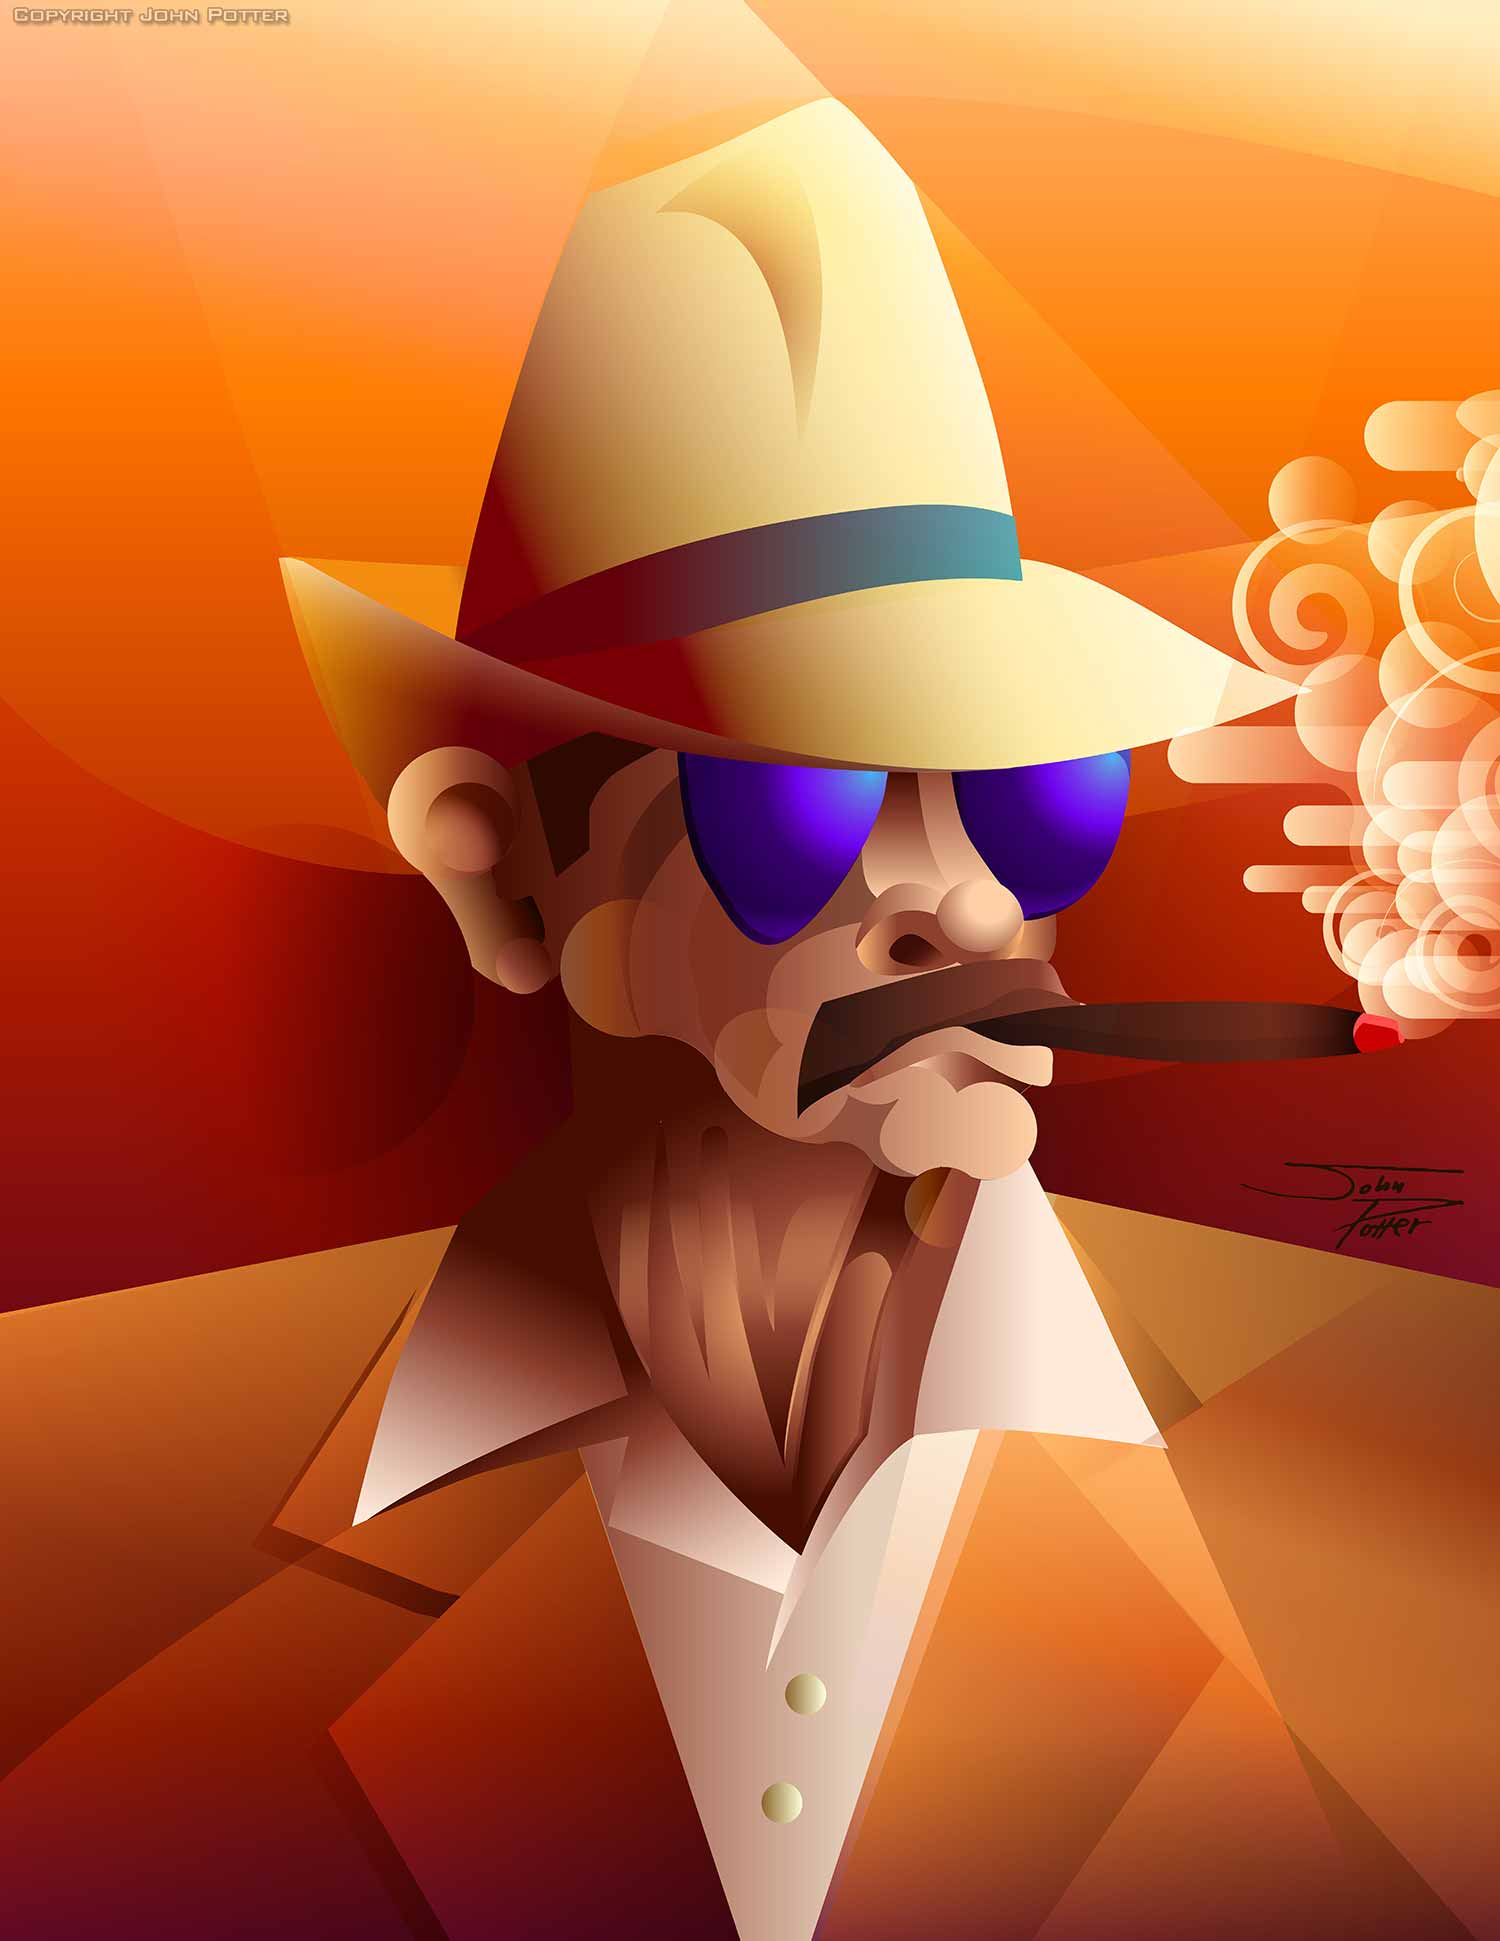 cigar smoker vector illustration